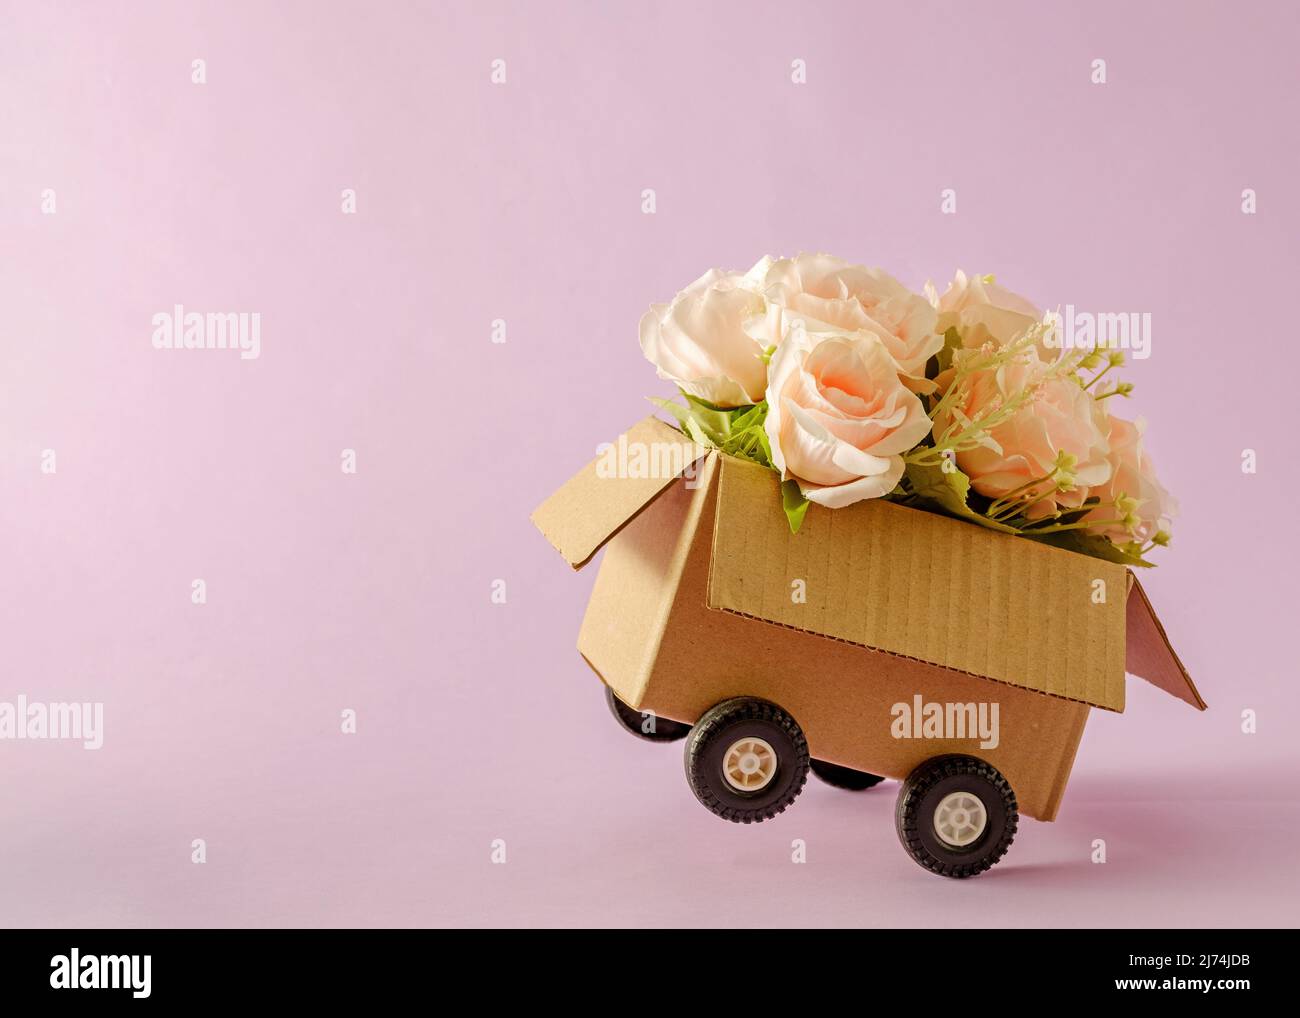 Conteneur de livraison de boîte en carton avec roues de camion et bouquet de roses roses. Concept minimal de courrier et félicitations avec un cadeau de vacances. Banque D'Images